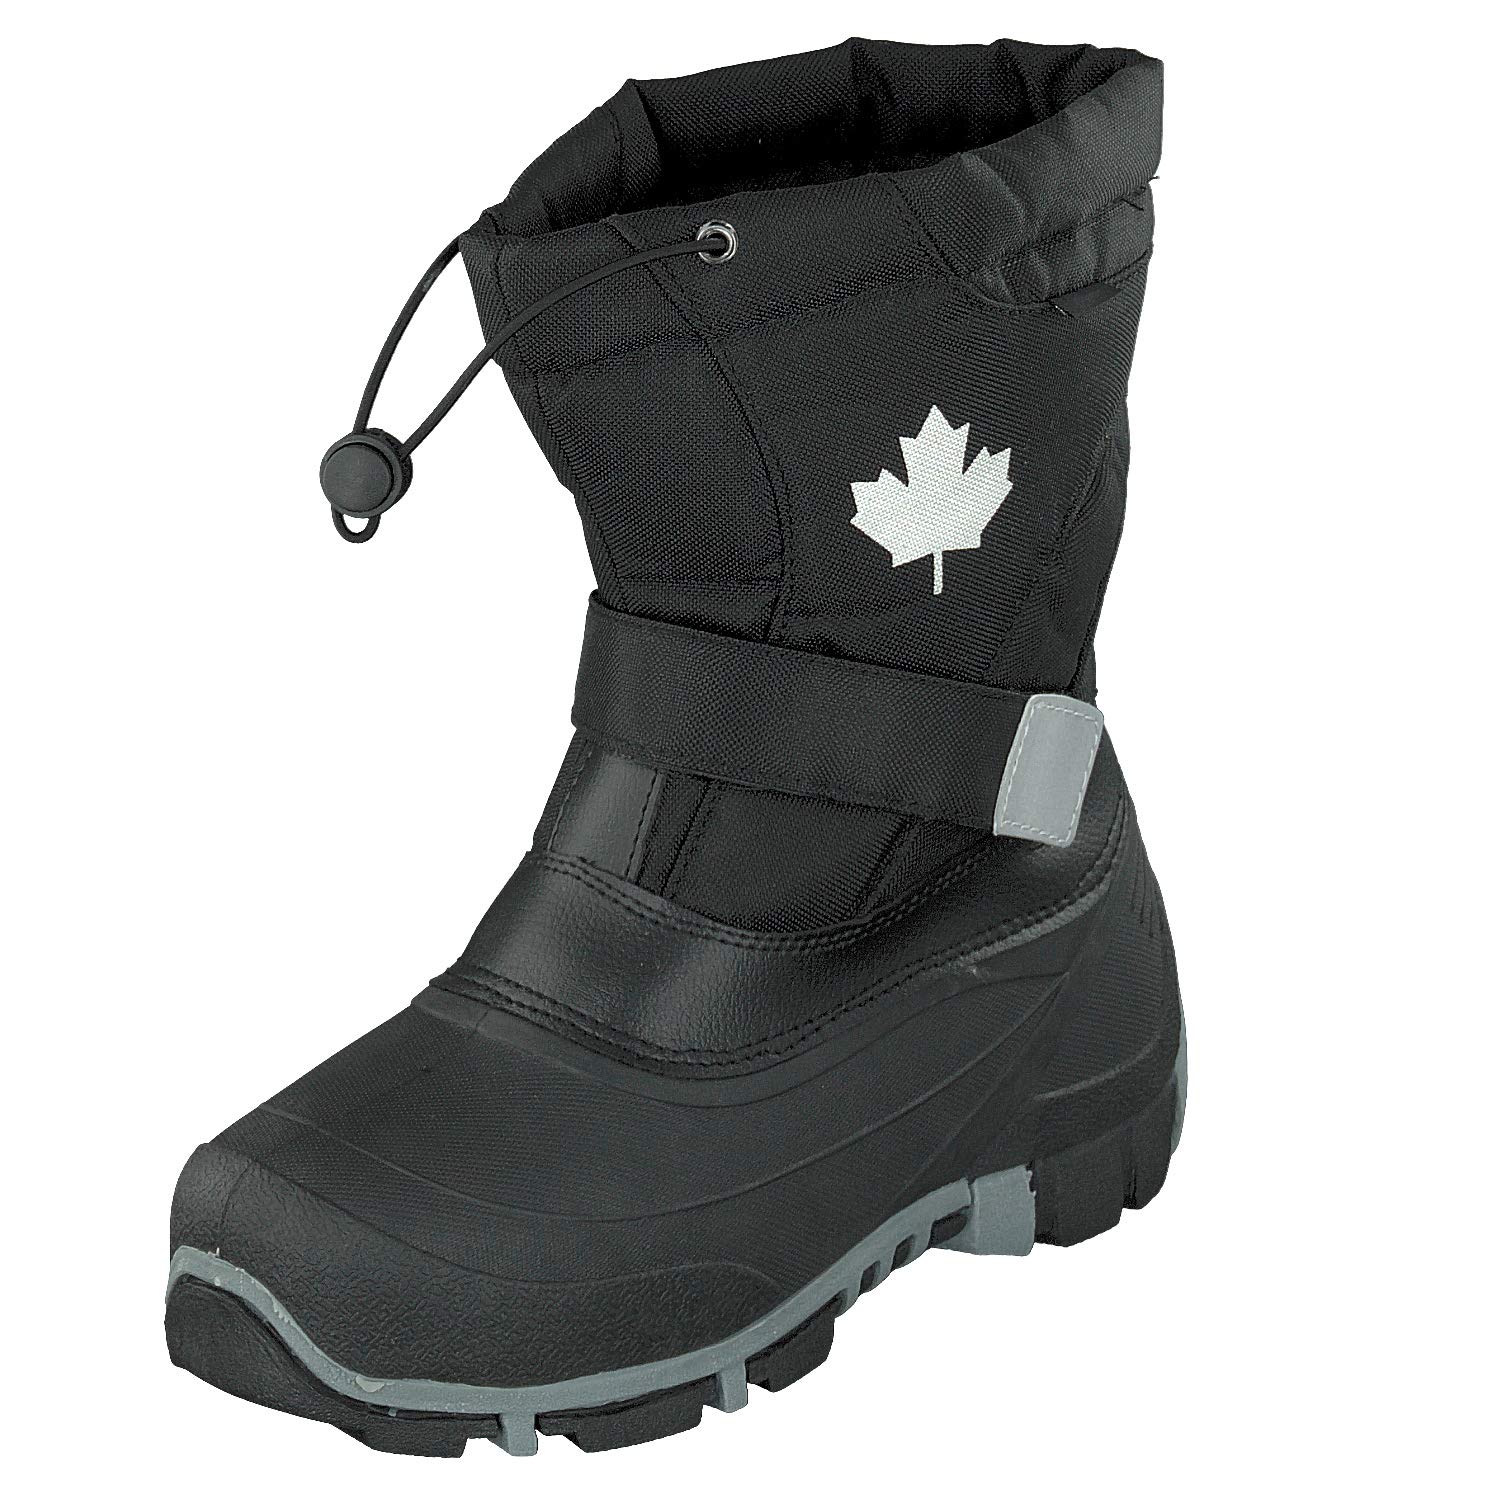 Indigo Canadians Unisex Winter Stiefel 467-185 mit Innenschuh in 2 Farben (38 EU, Black)